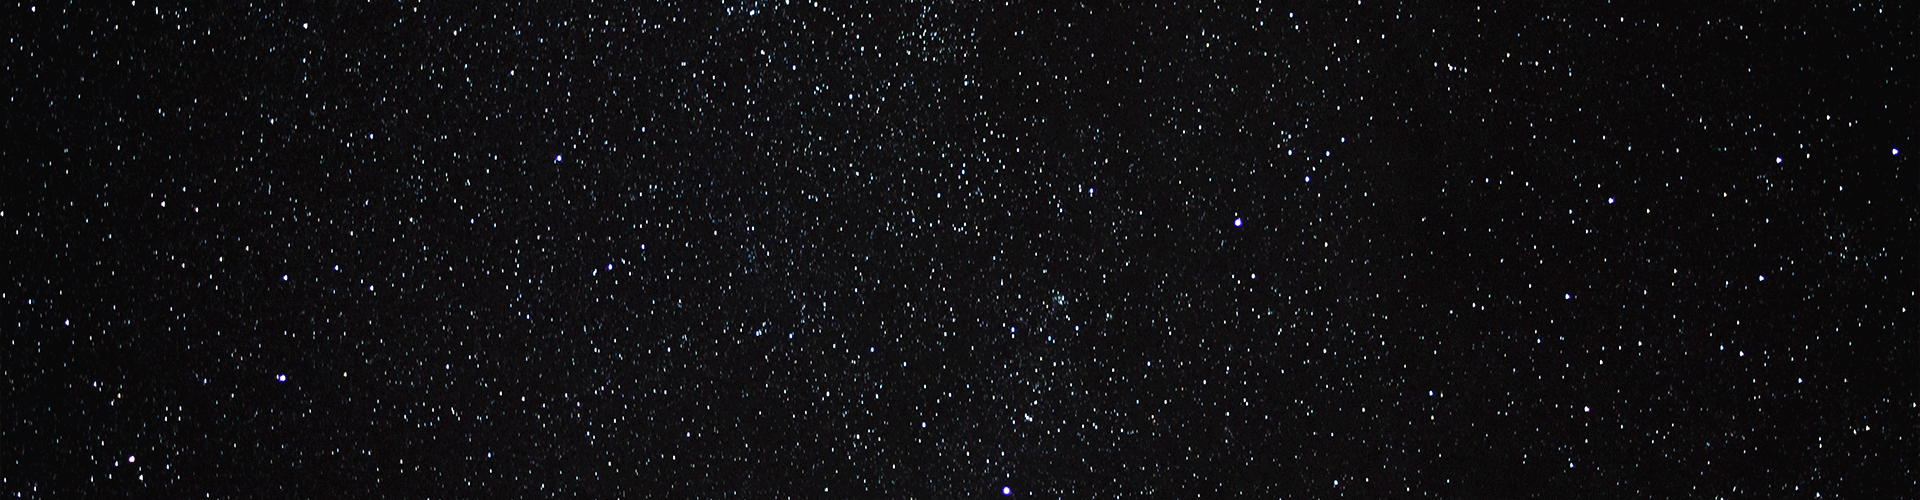 Sky of stars.